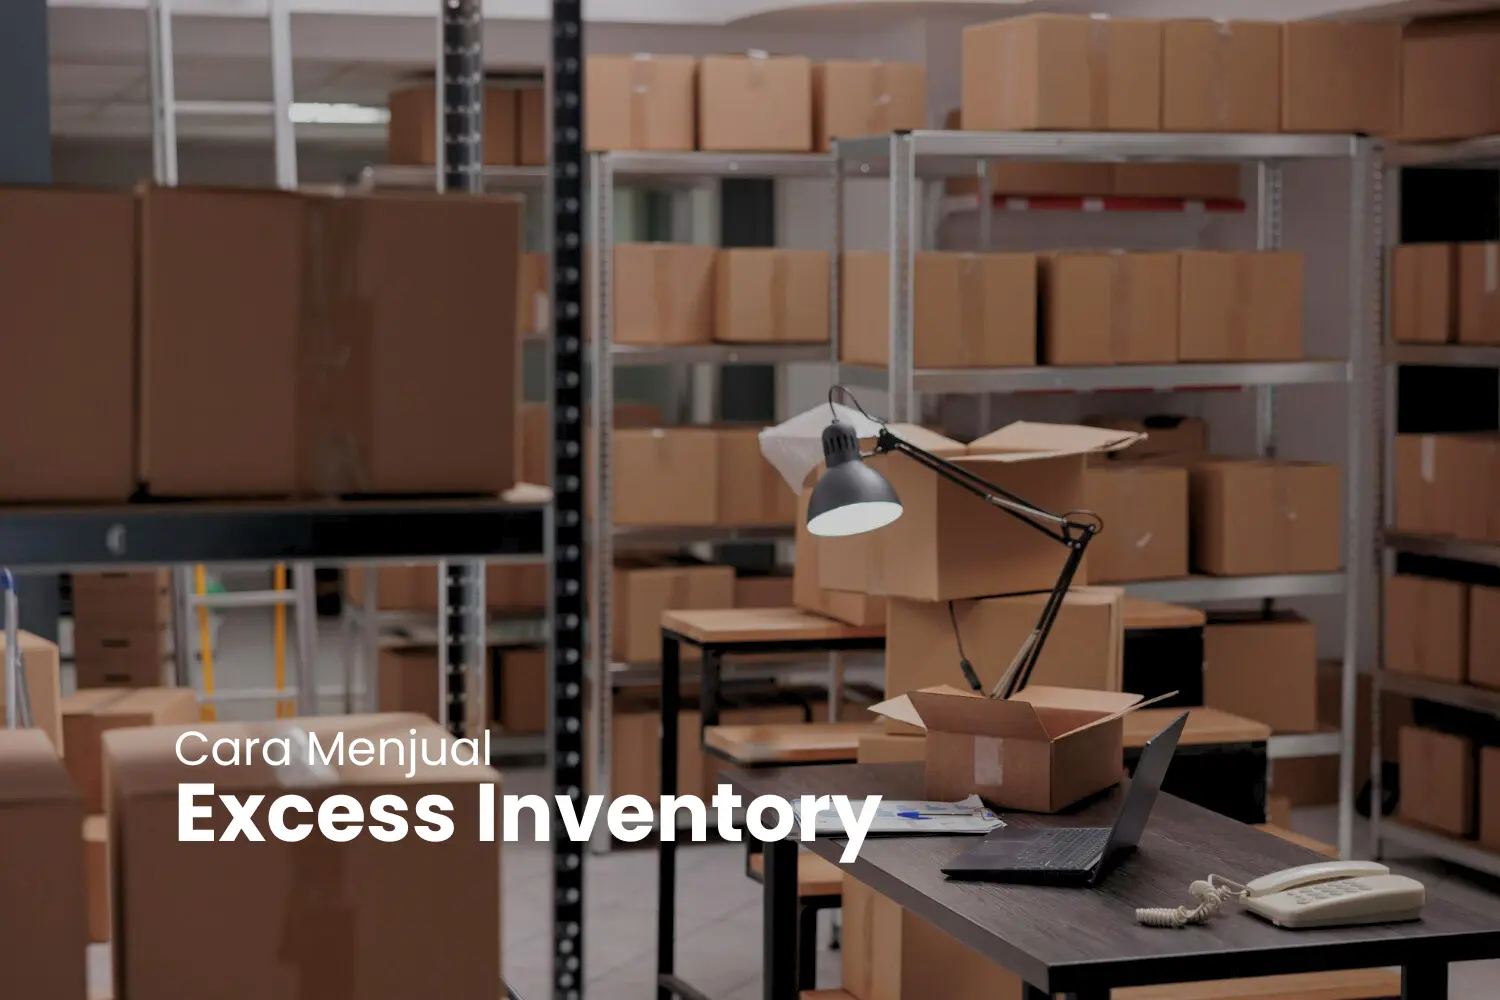 Cara Menjual Excess Inventory